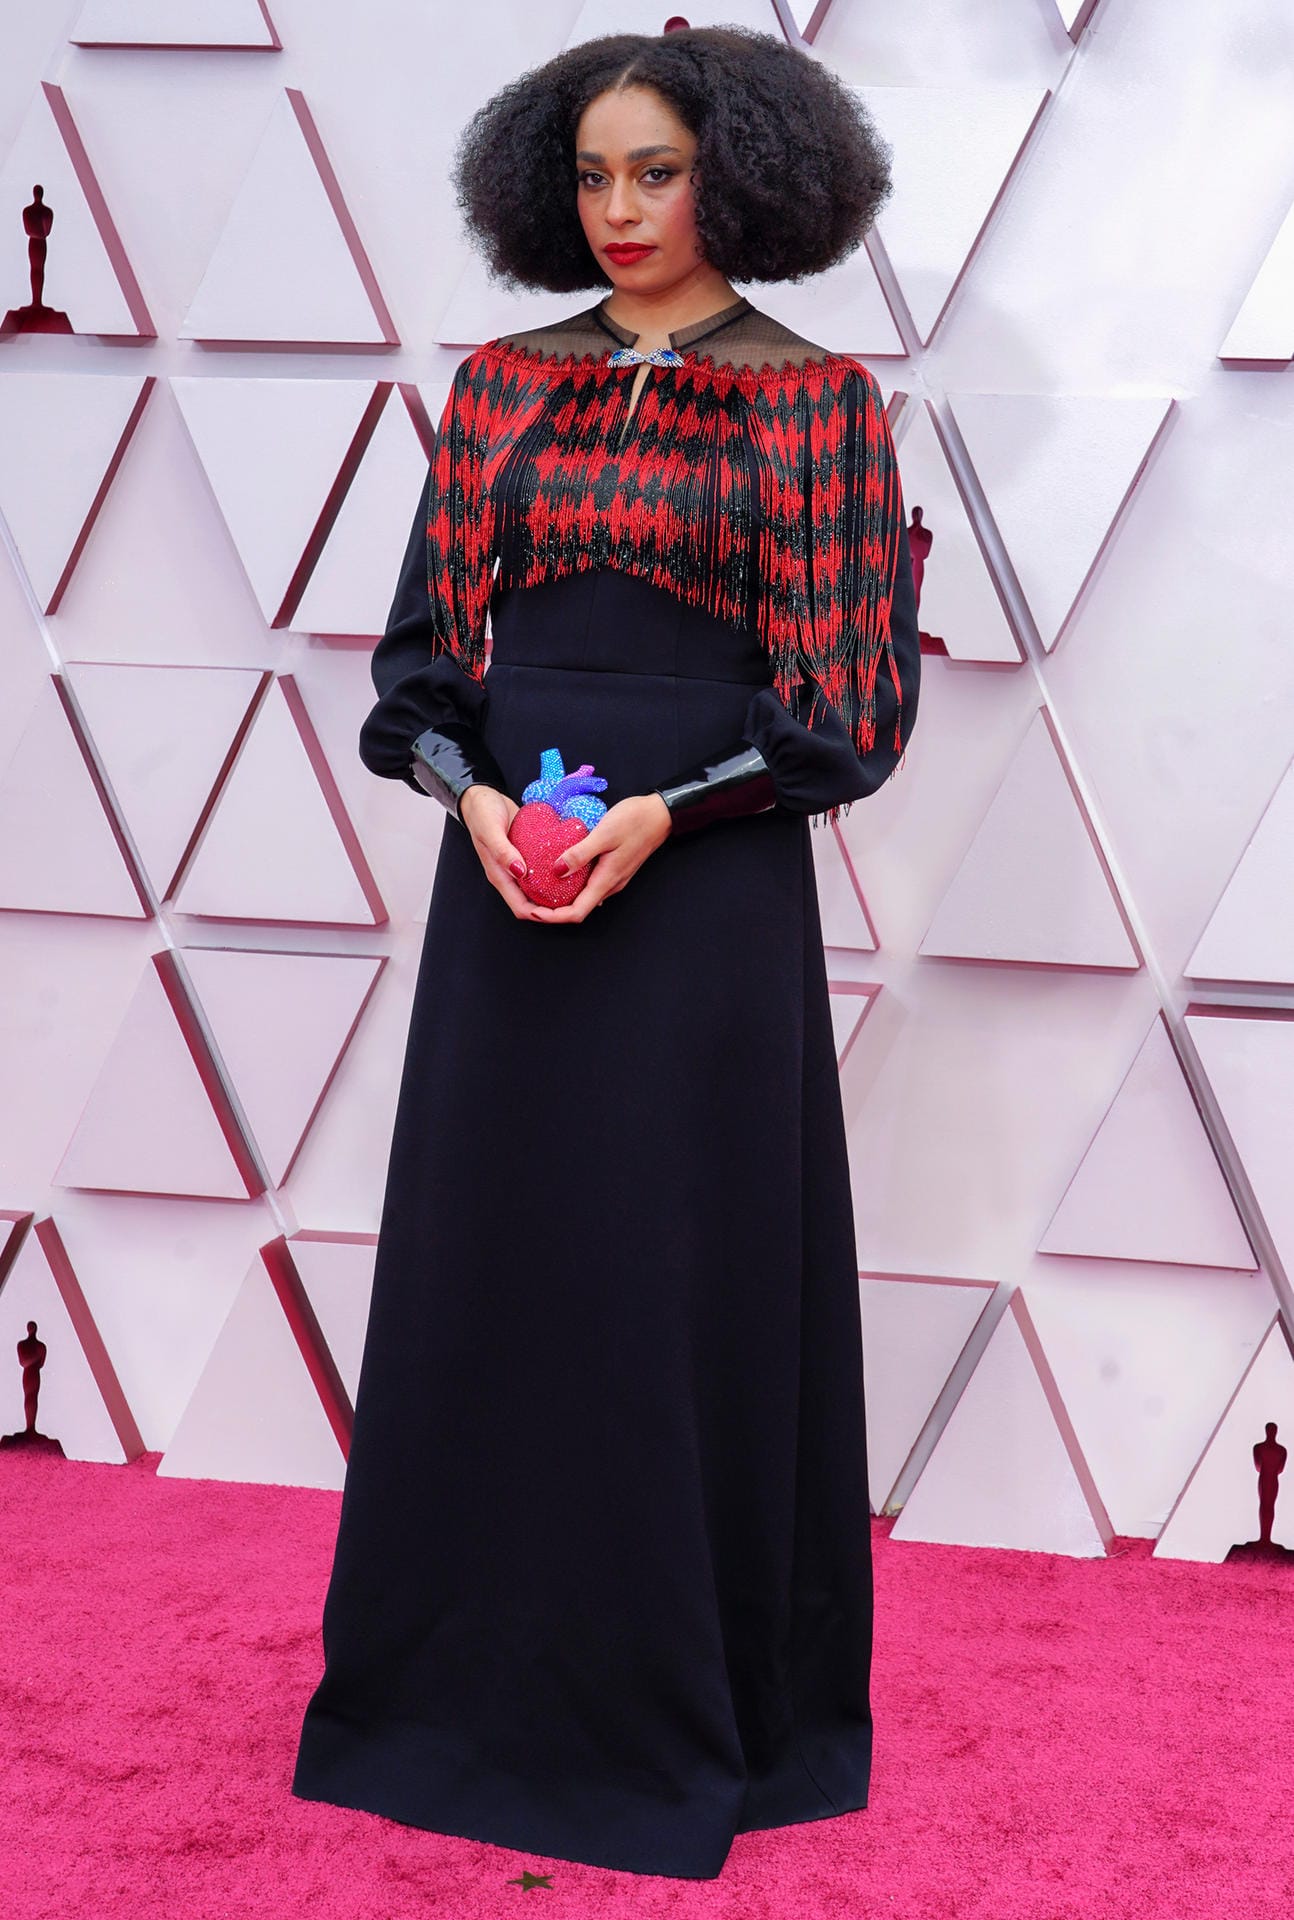 Celeste Waite: Sie war für den besten Originalsong mit "Hear My Voice" im Film "The Trial of the Chicago 7" nominiert.